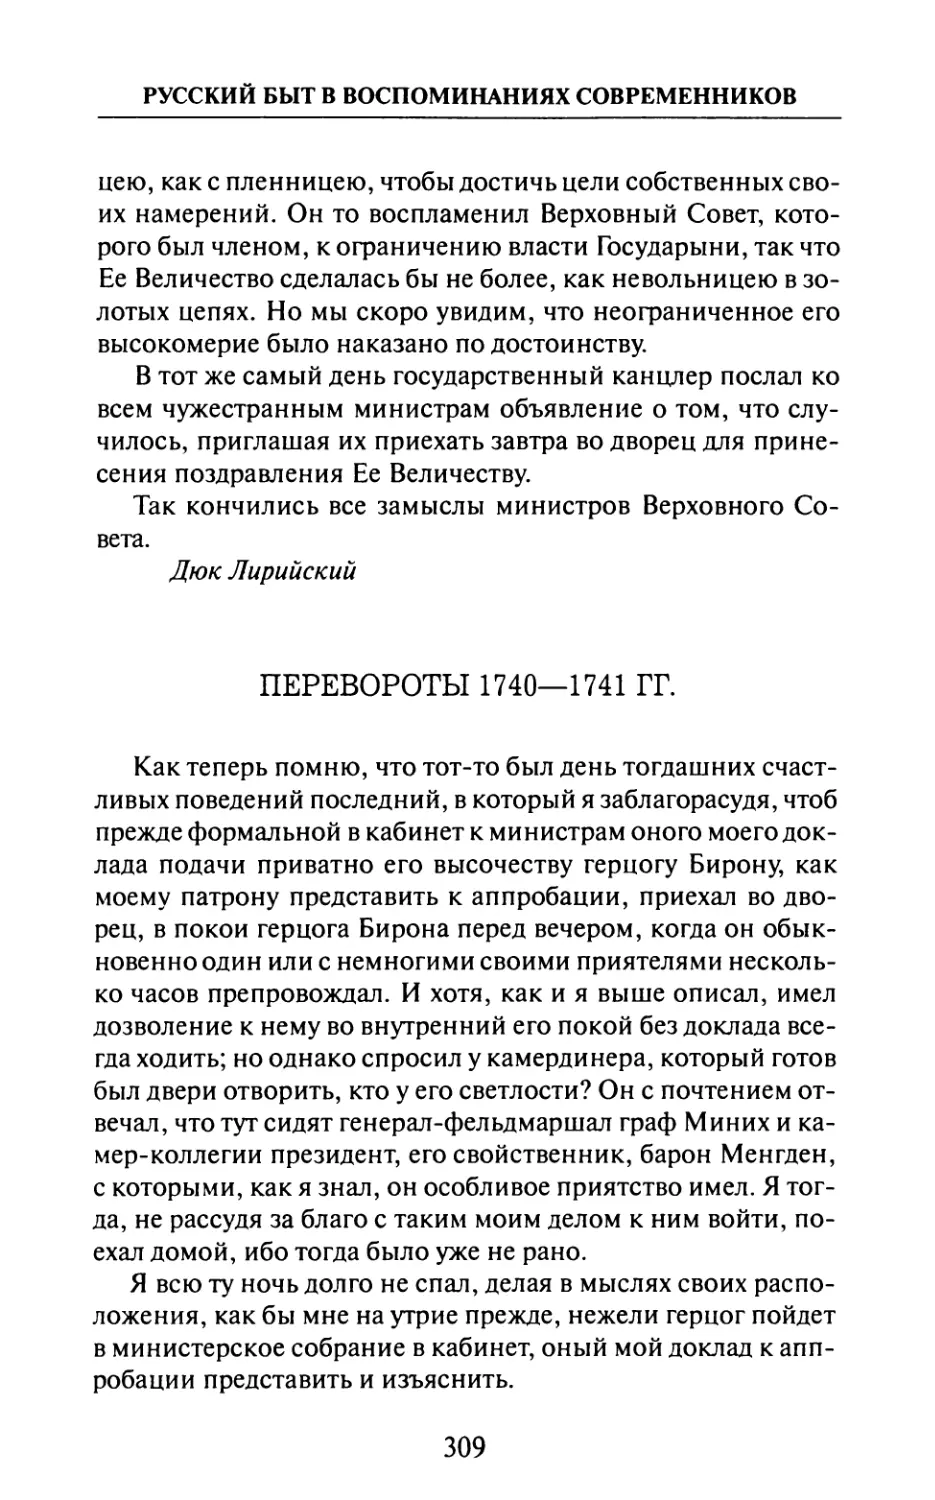 Перевороты  1740—1741  гг.  —  Кн.  Я.  Шаховской.  «Записки», ч.  1